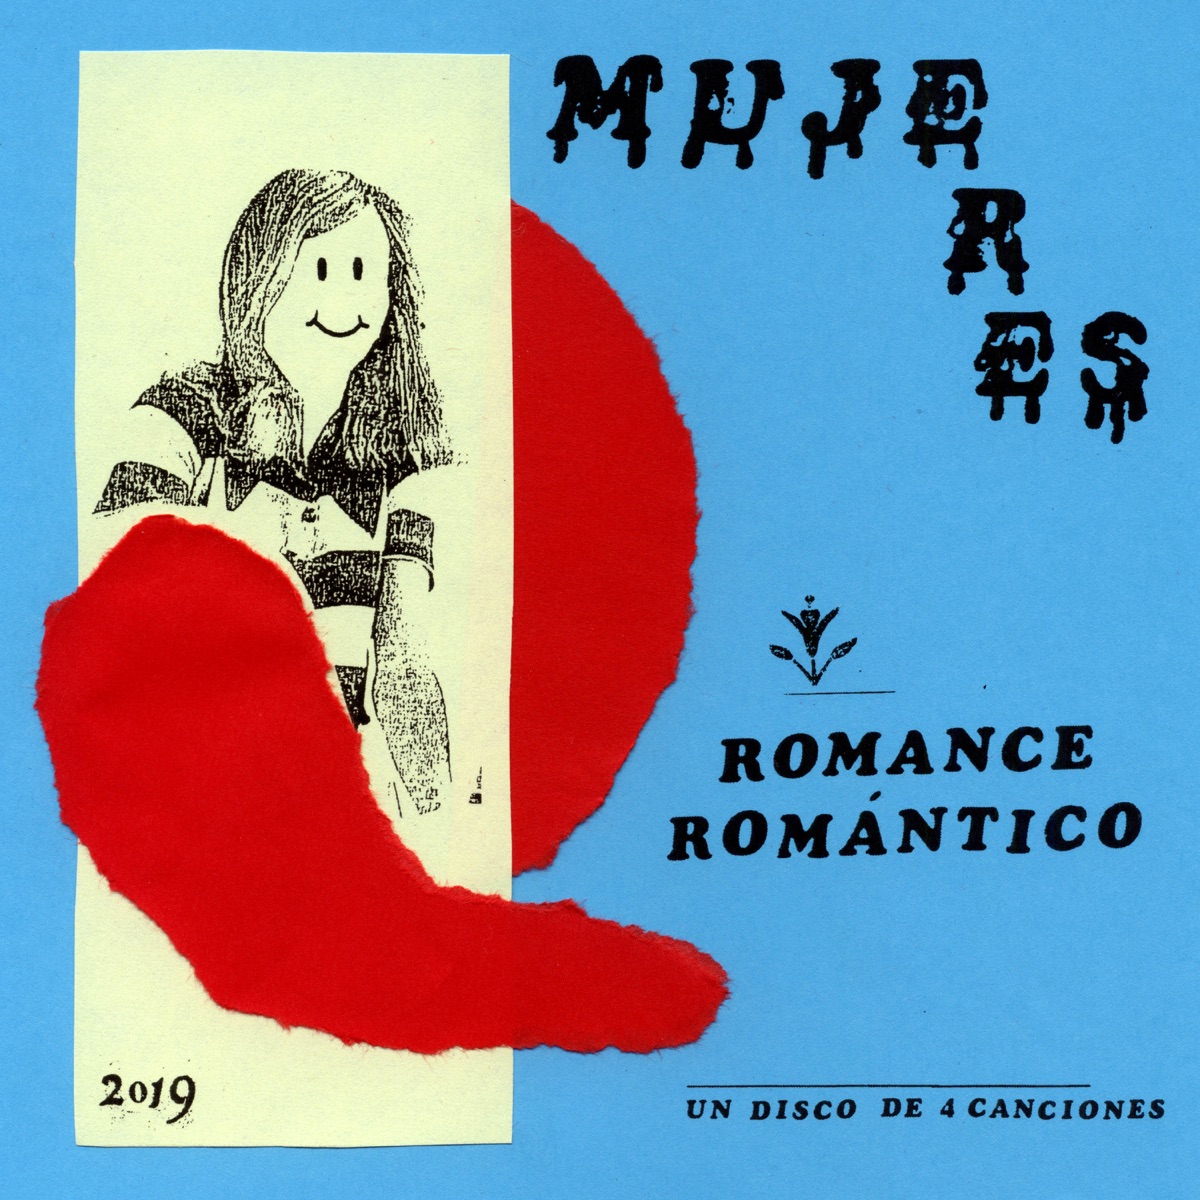 Romance Romántico - EP - Album by Mujeres - Apple Music